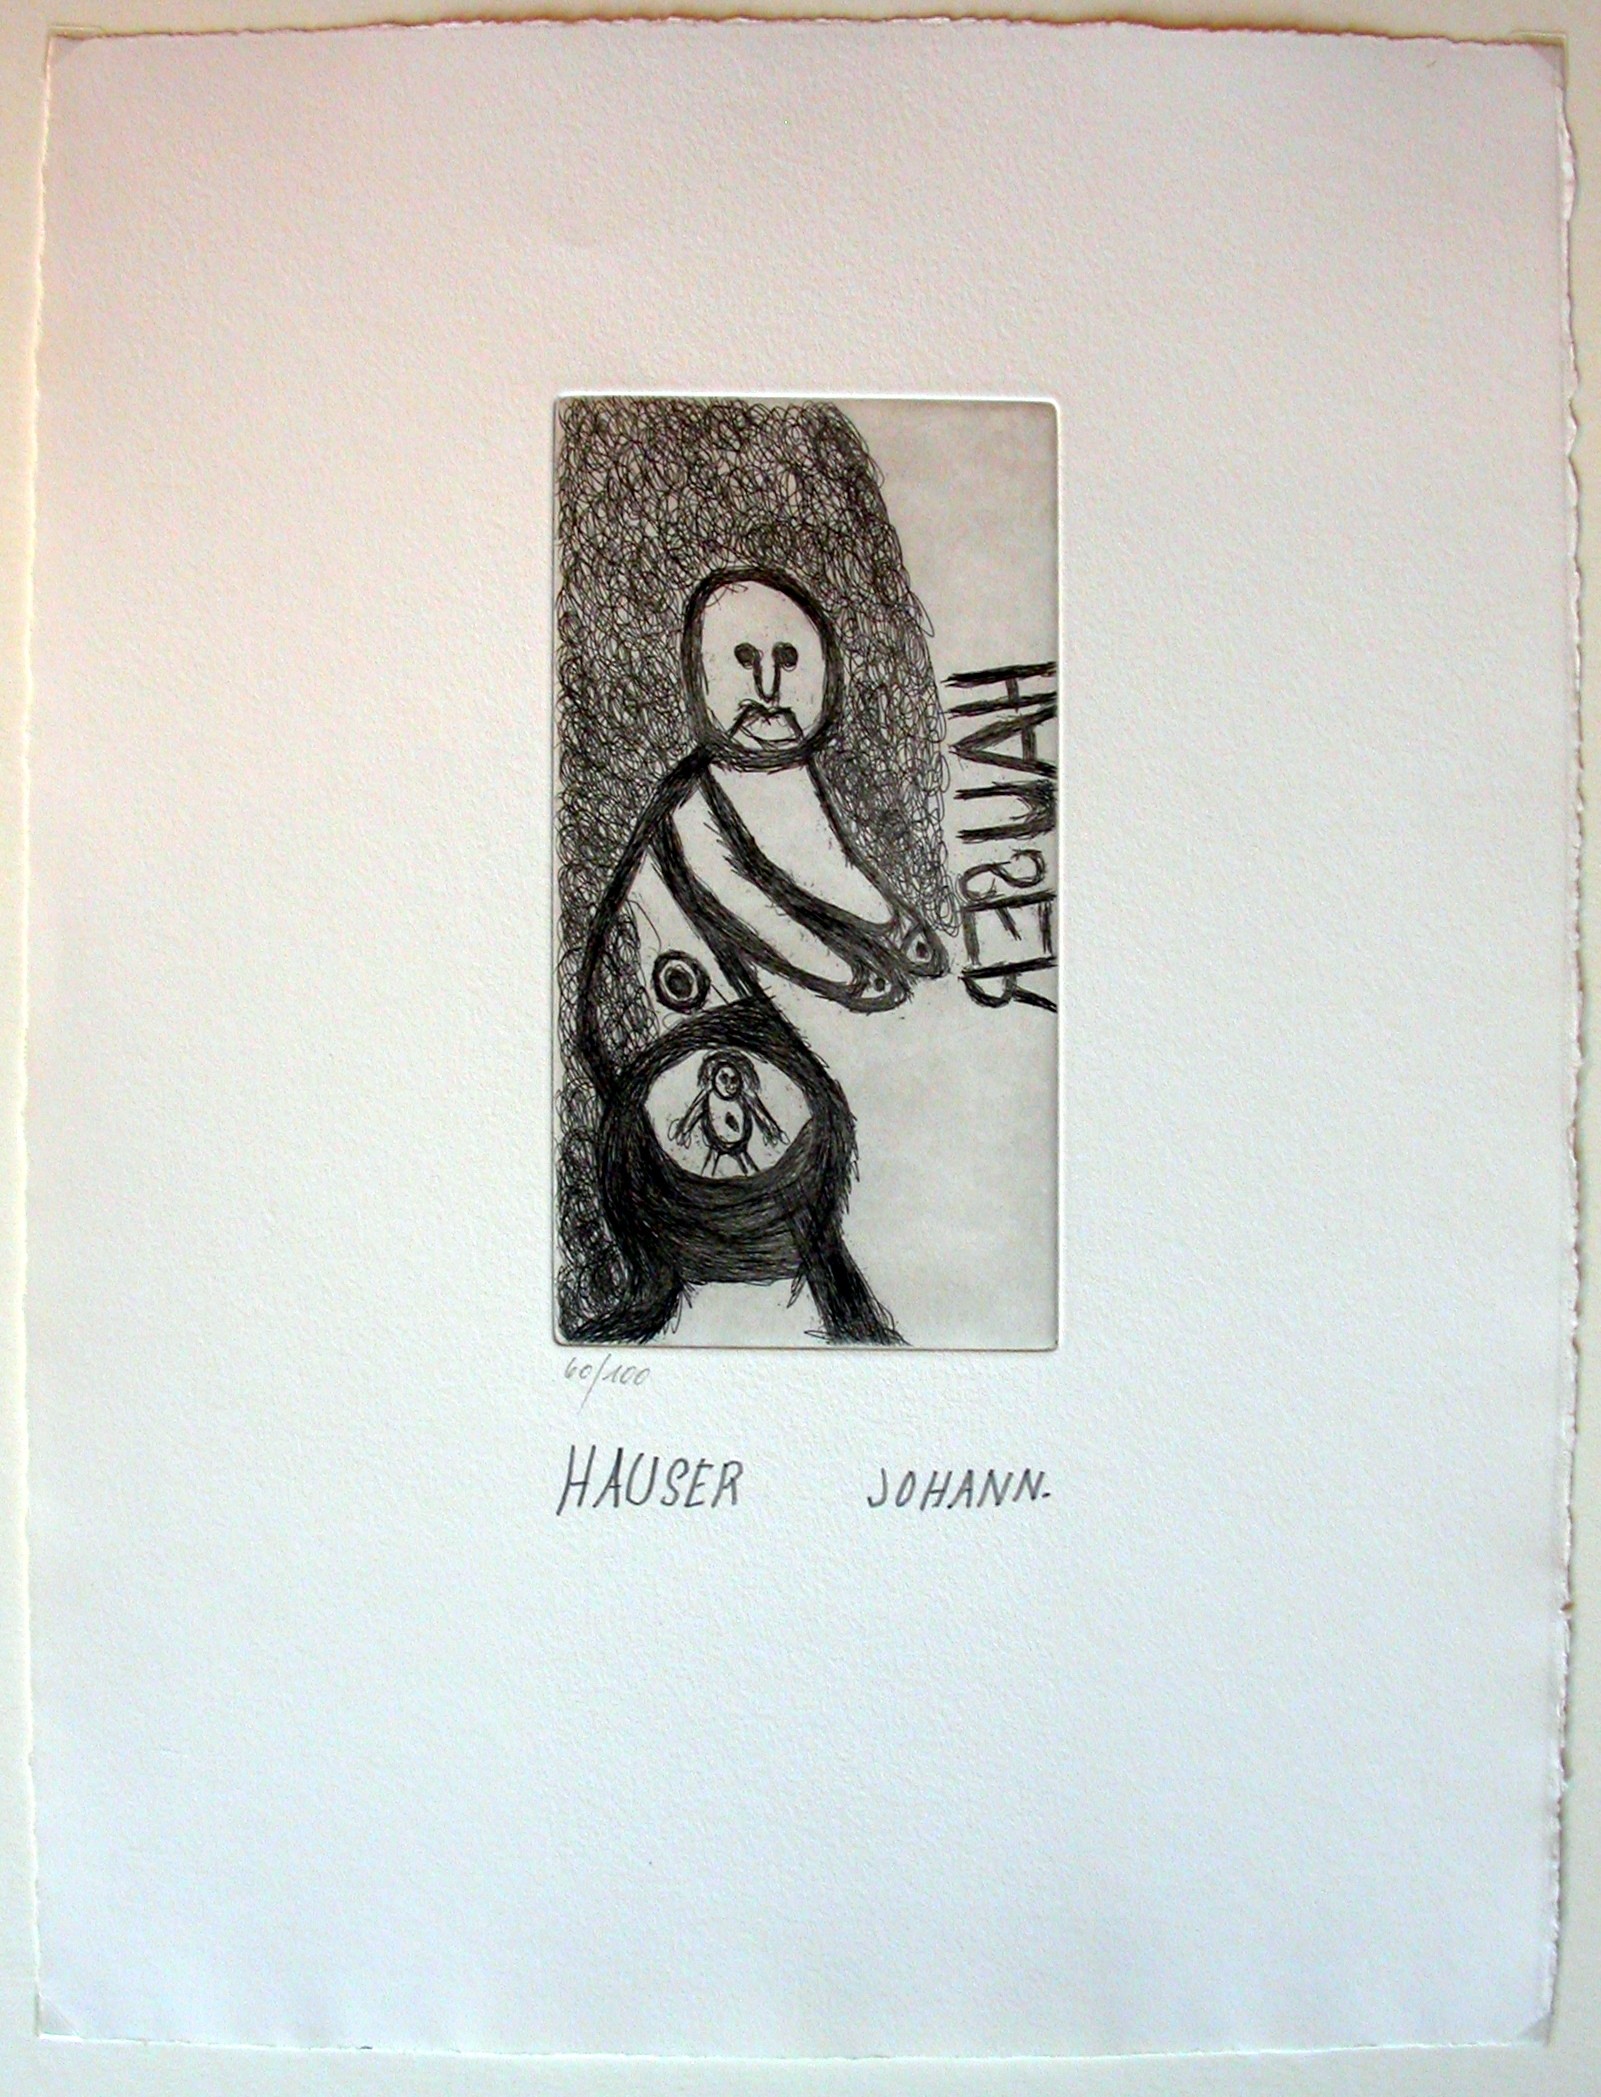 Hauser (1926-1996) "Frau mit Kind im Bauch"